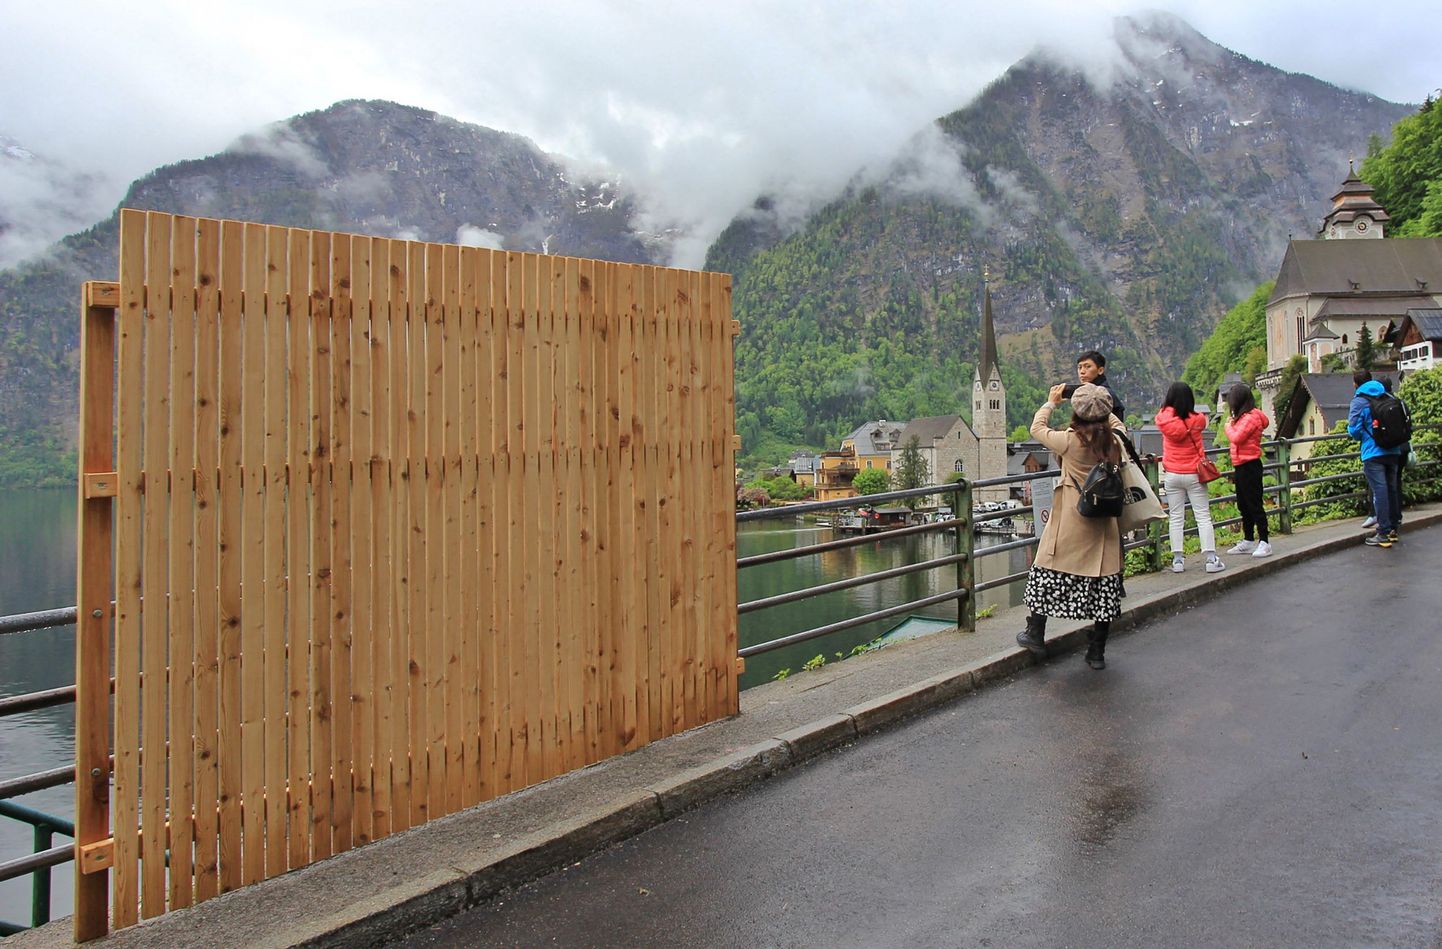 Временный деревянный забор частично загораживает живописный вид, пока посетители делают селфи на фоне пейзажа в туристическом городе Гальштат, Австрия, 15 мая 2023 года.